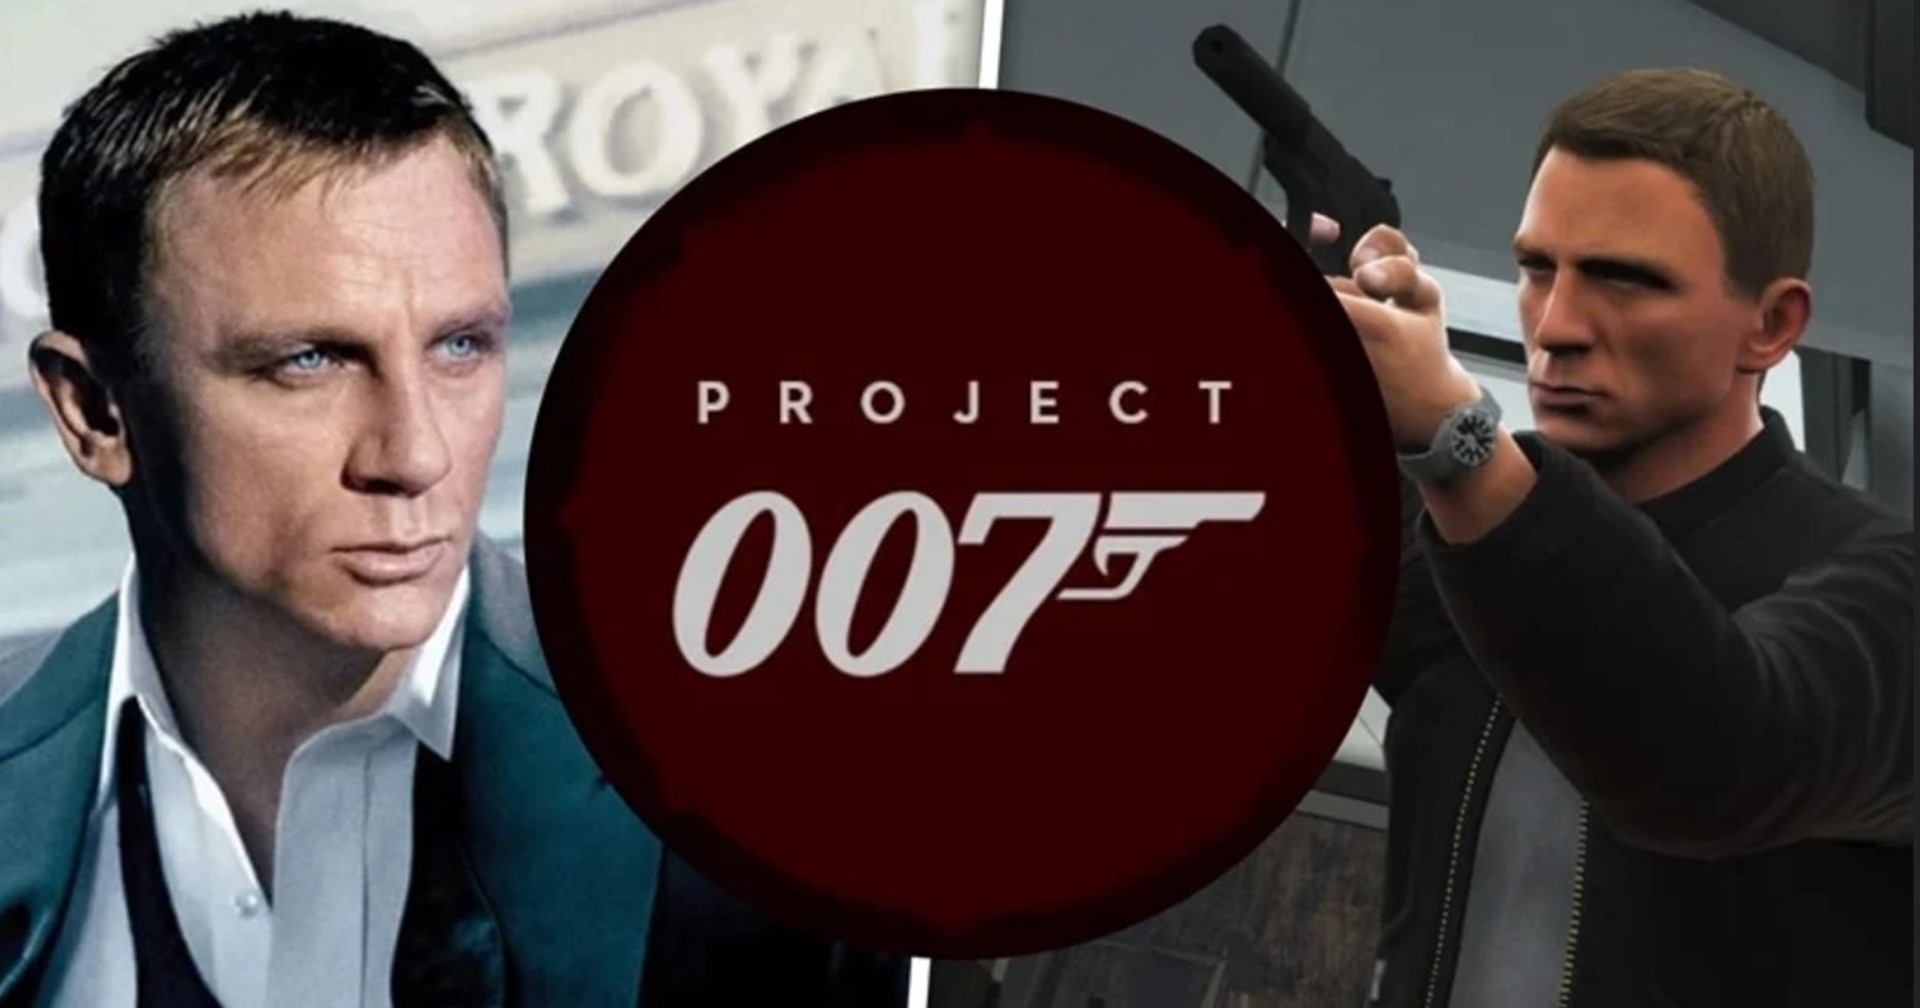 พบข้อมูลเกมสายลับ ‘Project 007’ จะใช้มุมกล้องแบบผสมผสาน